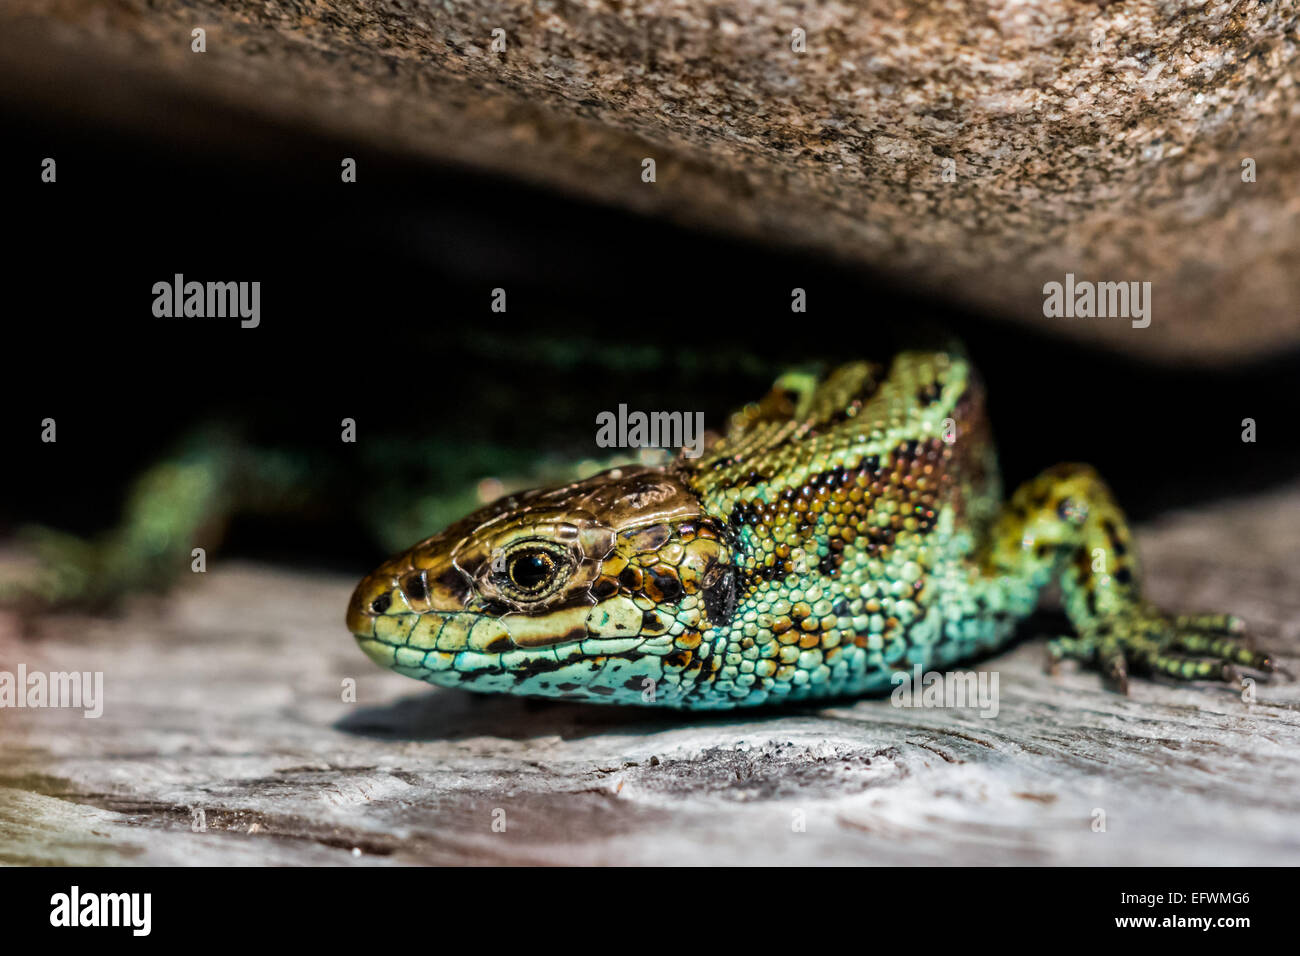 A green viviparous lizard (Zootoca vivipara) Stock Photo